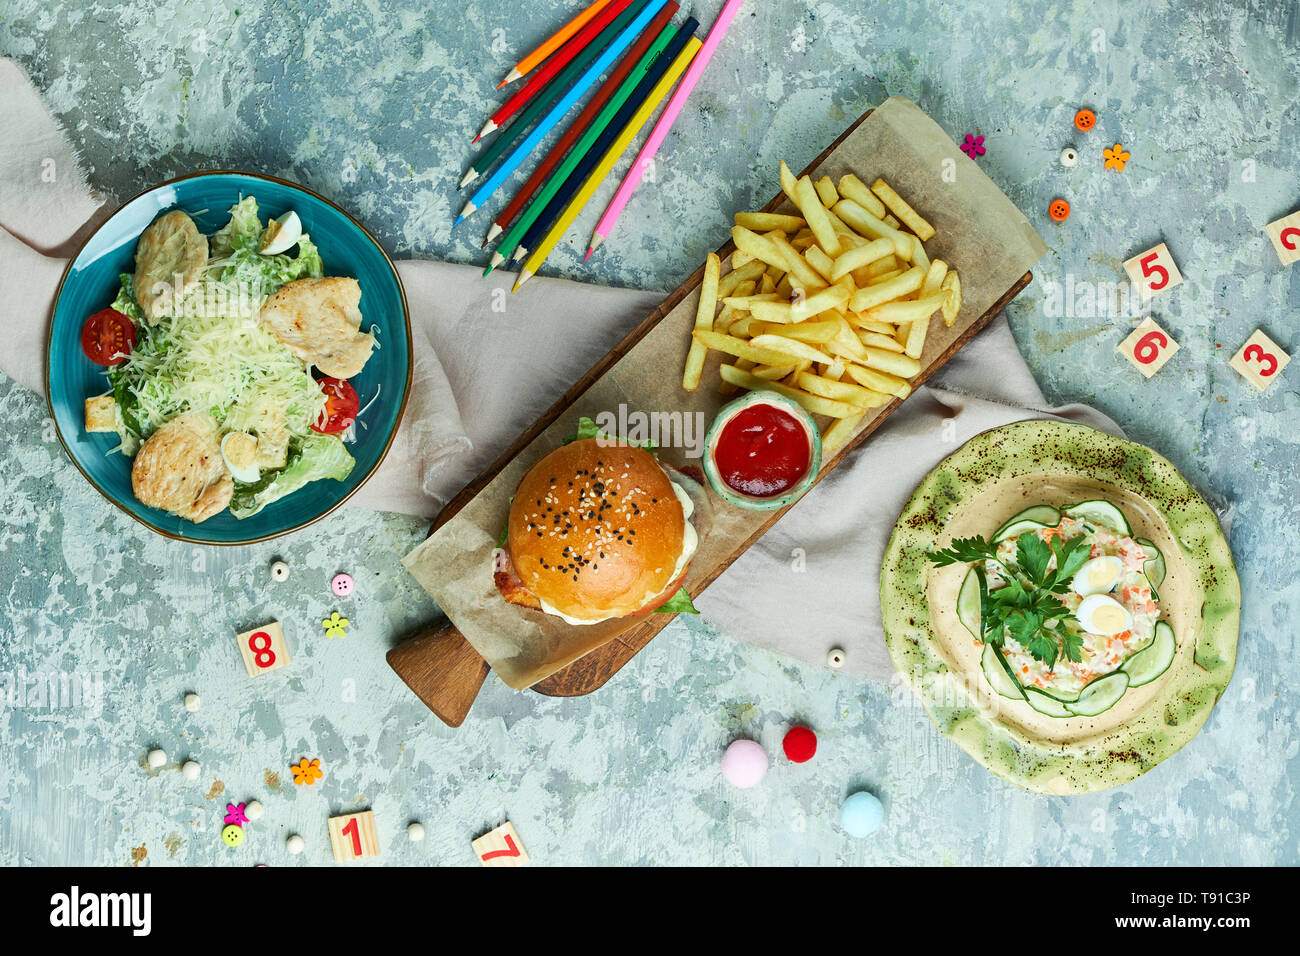 Su un grigio sfondo a trama è una piastra blu con insalata tseat, una tavola di legno con un hamburger e patatine, una piastra di colore giallo con insalata di granchio. Bellissimi piatti di servizio. Menu per bambini nel ristorante. Vista da sopra Foto Stock